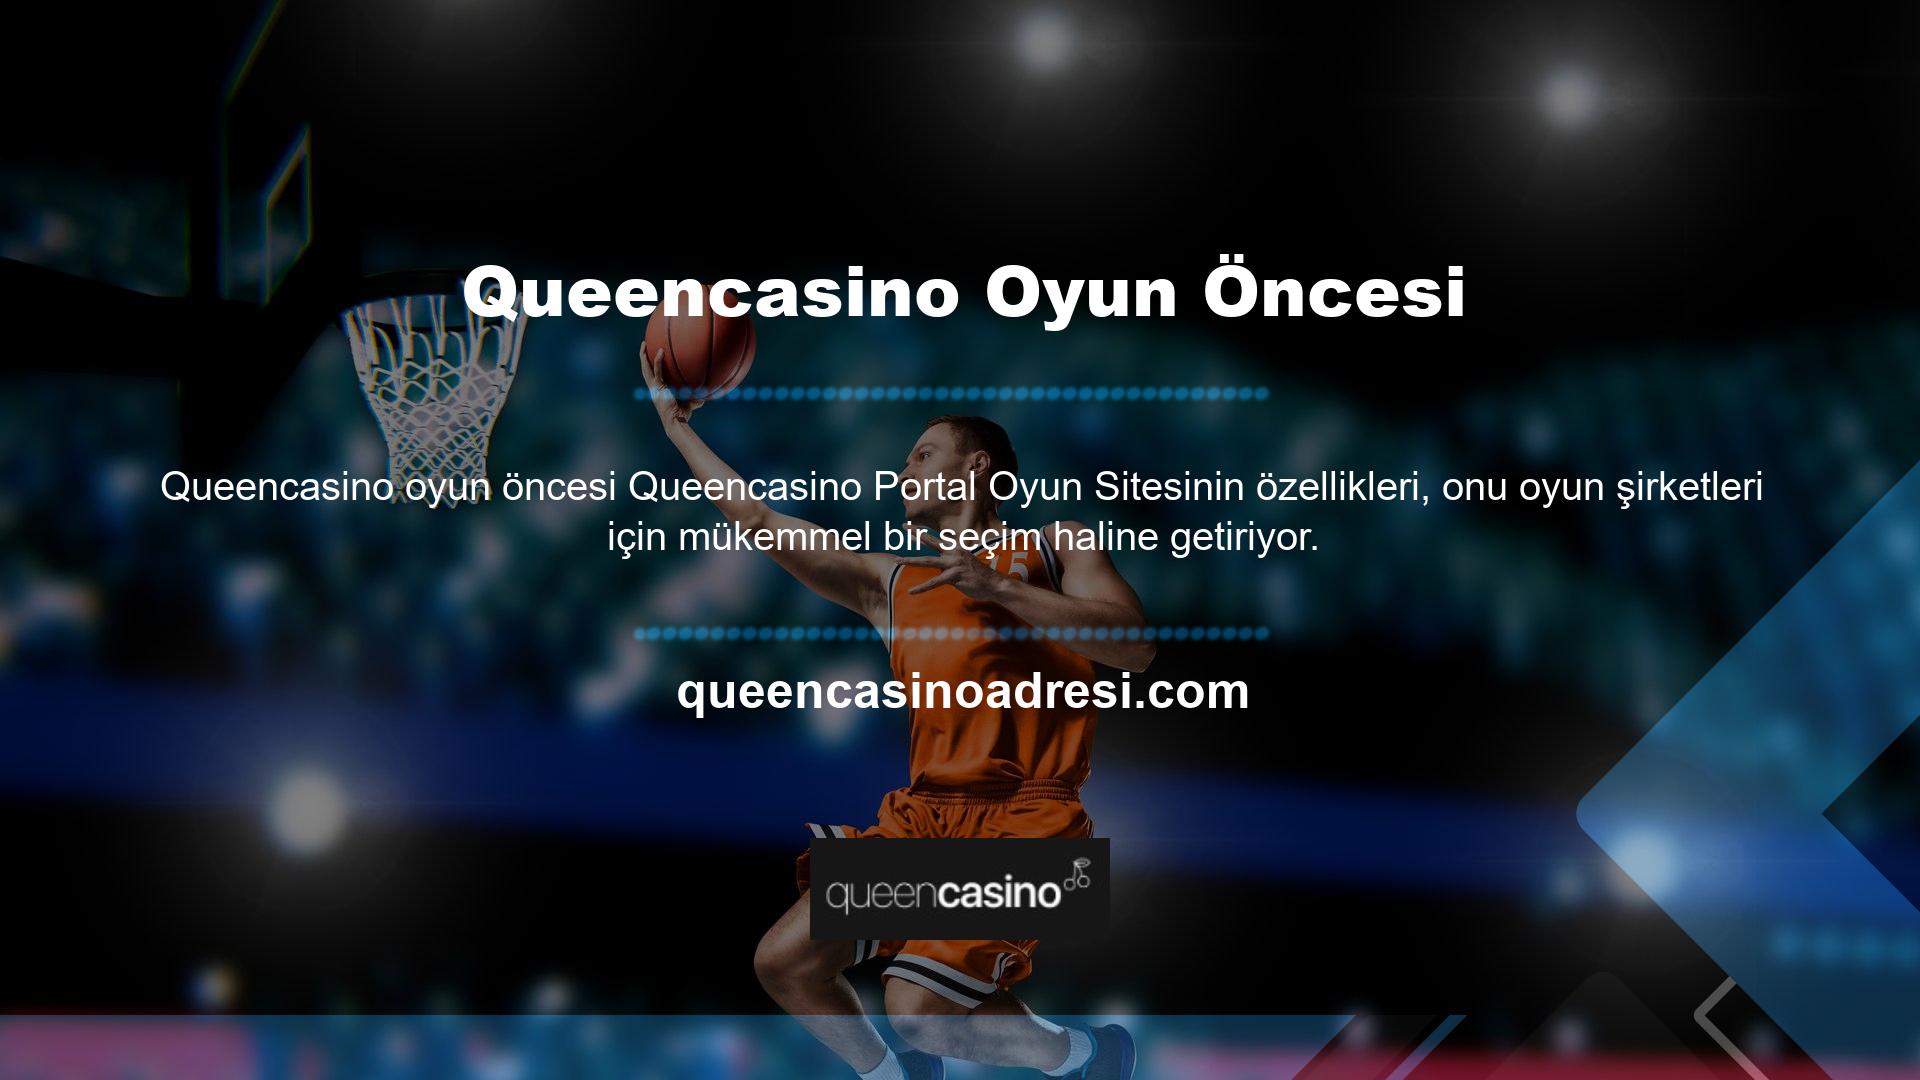 Queencasino giriş adresi yasa dışı casino siteleriyle paylaşıldığından erişim adresi genellikle BTK tarafından engellenmektedir